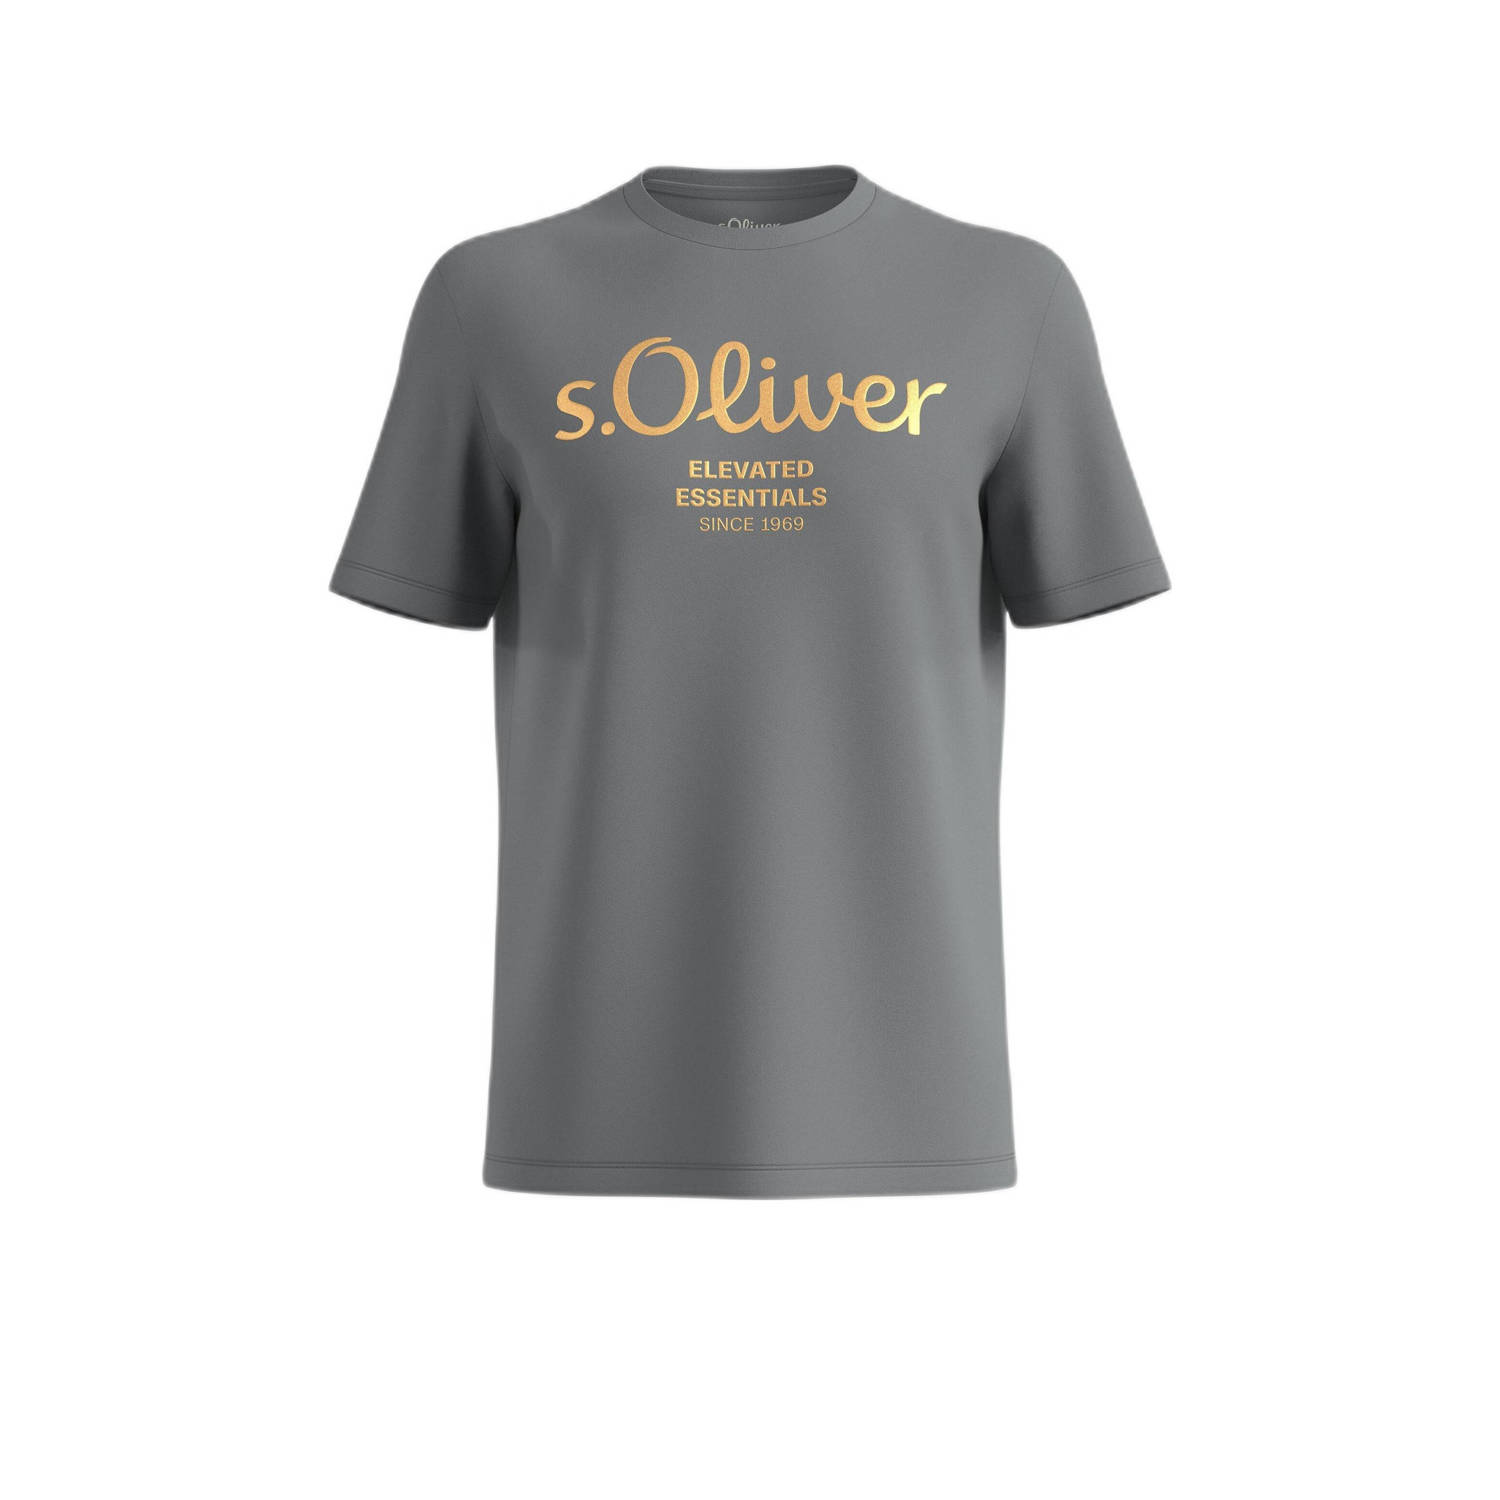 S.Oliver T-shirt met printopdruk grijs